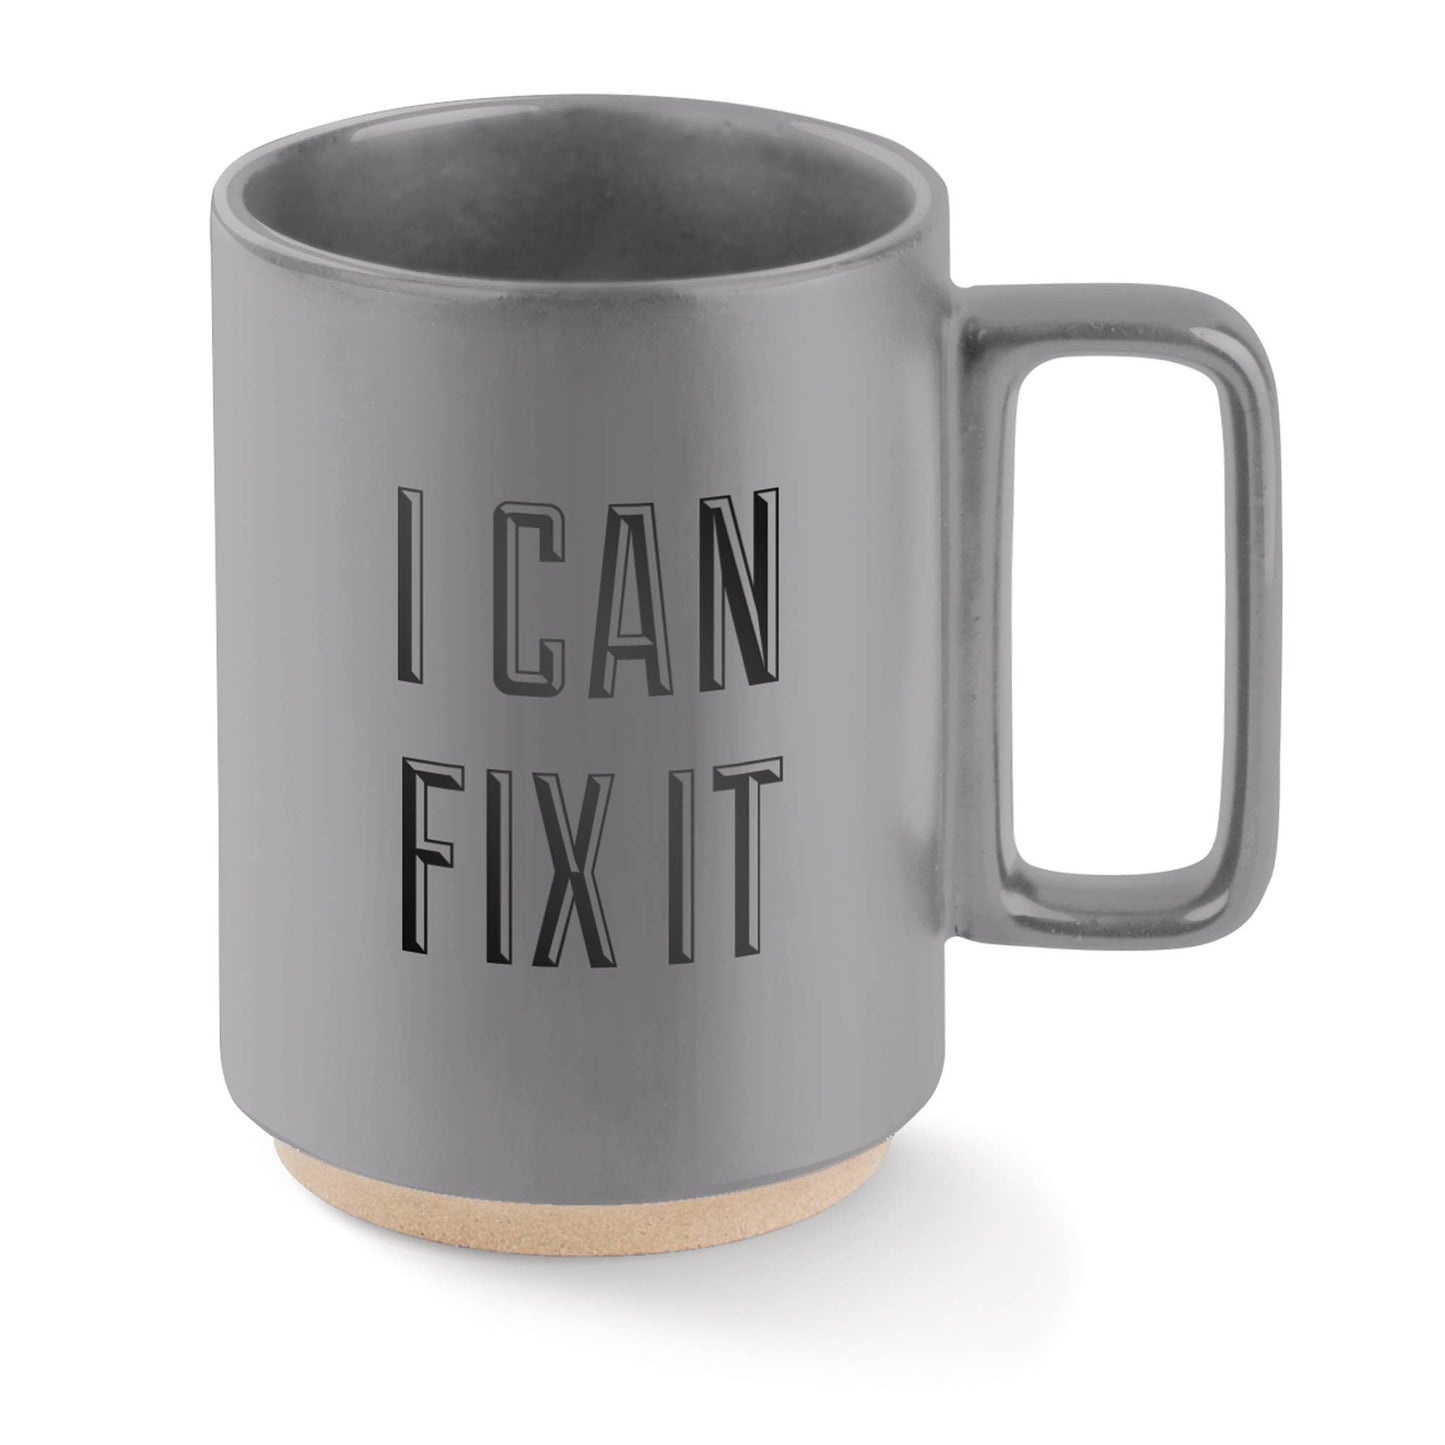 Fix It Mug